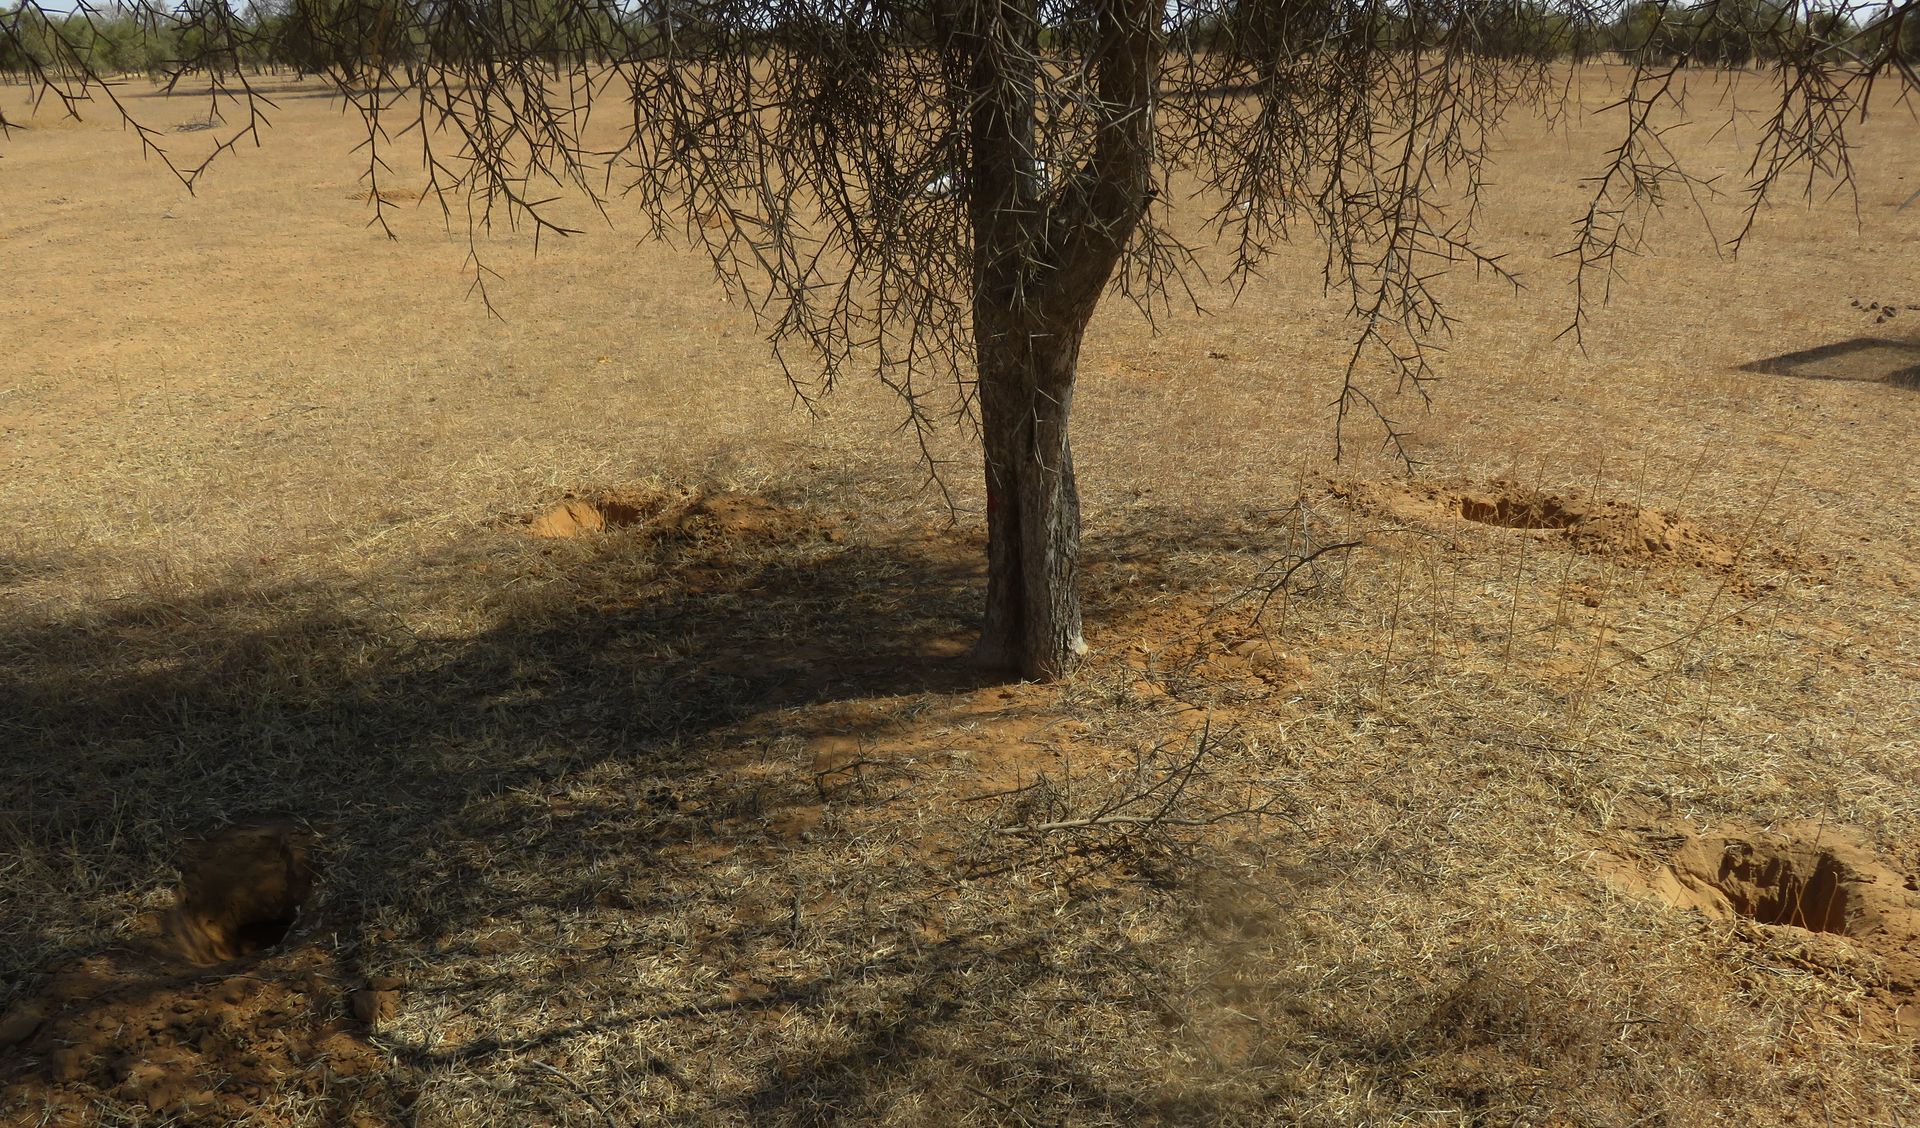 Points de collecte de sol sous houppier dans la zone sylvopastorale du Sénégal©Juste Djagoun, 2022